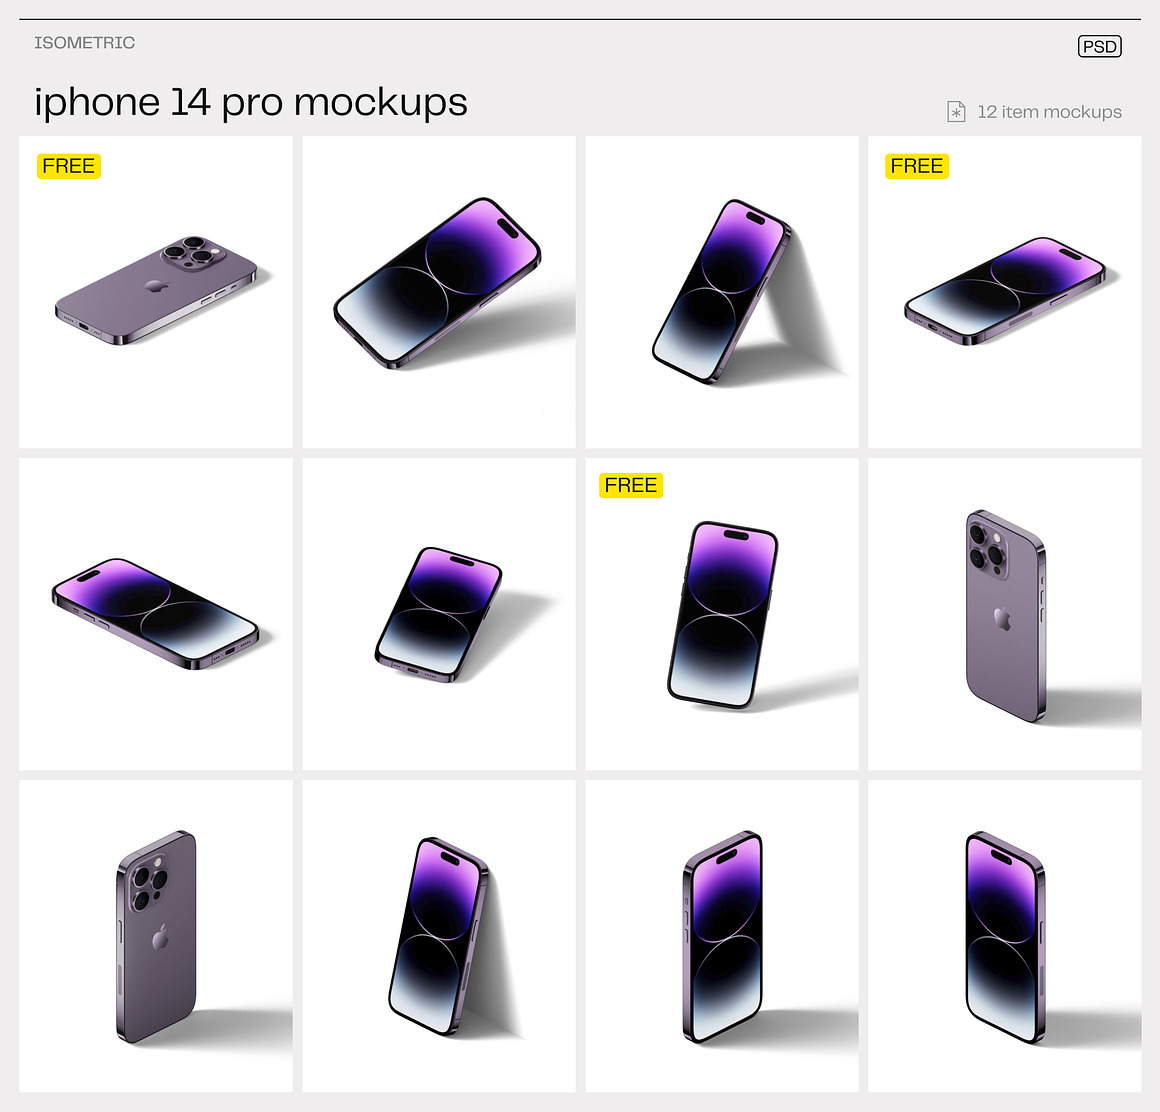 工业风极简质感高级IPhone14 pro苹果手机App界面UI设计作品贴图展示PSD暗黑场景样机套装 iPhone 14 pro mockups（9765）图层云